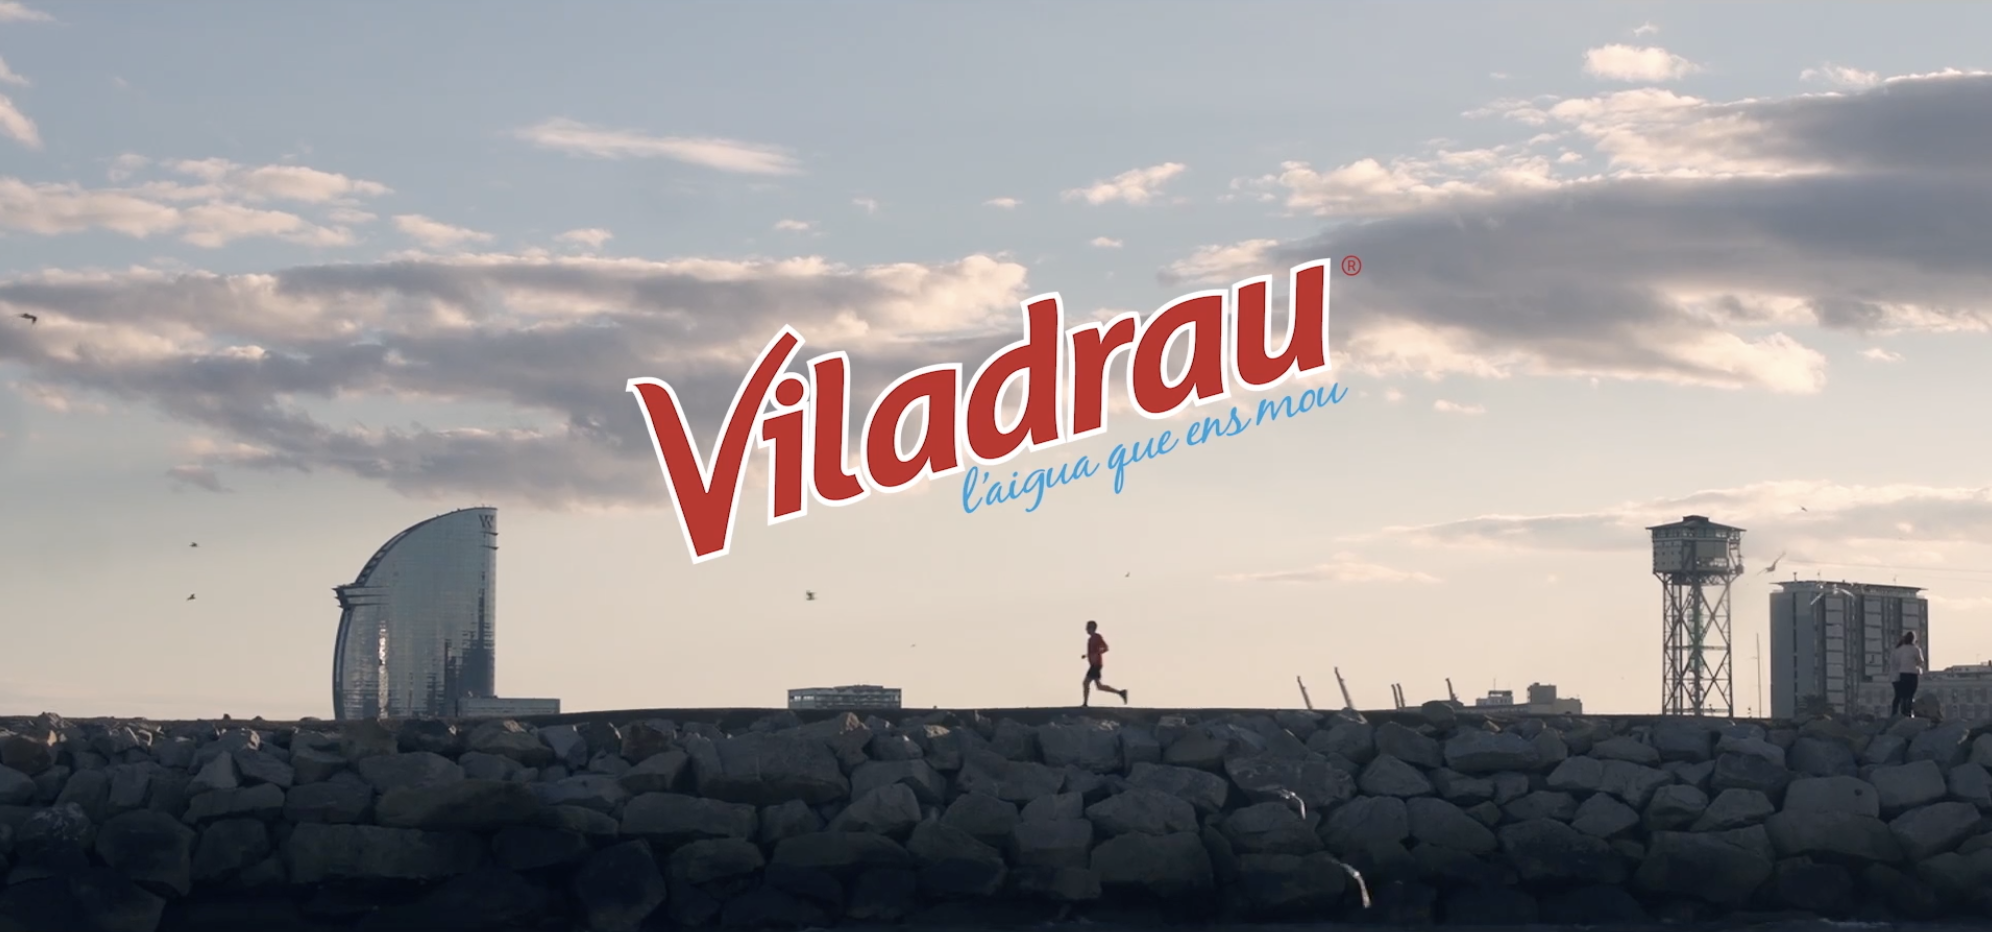 Viladrau apoya a los runners con un soporte innovador y tecnológico